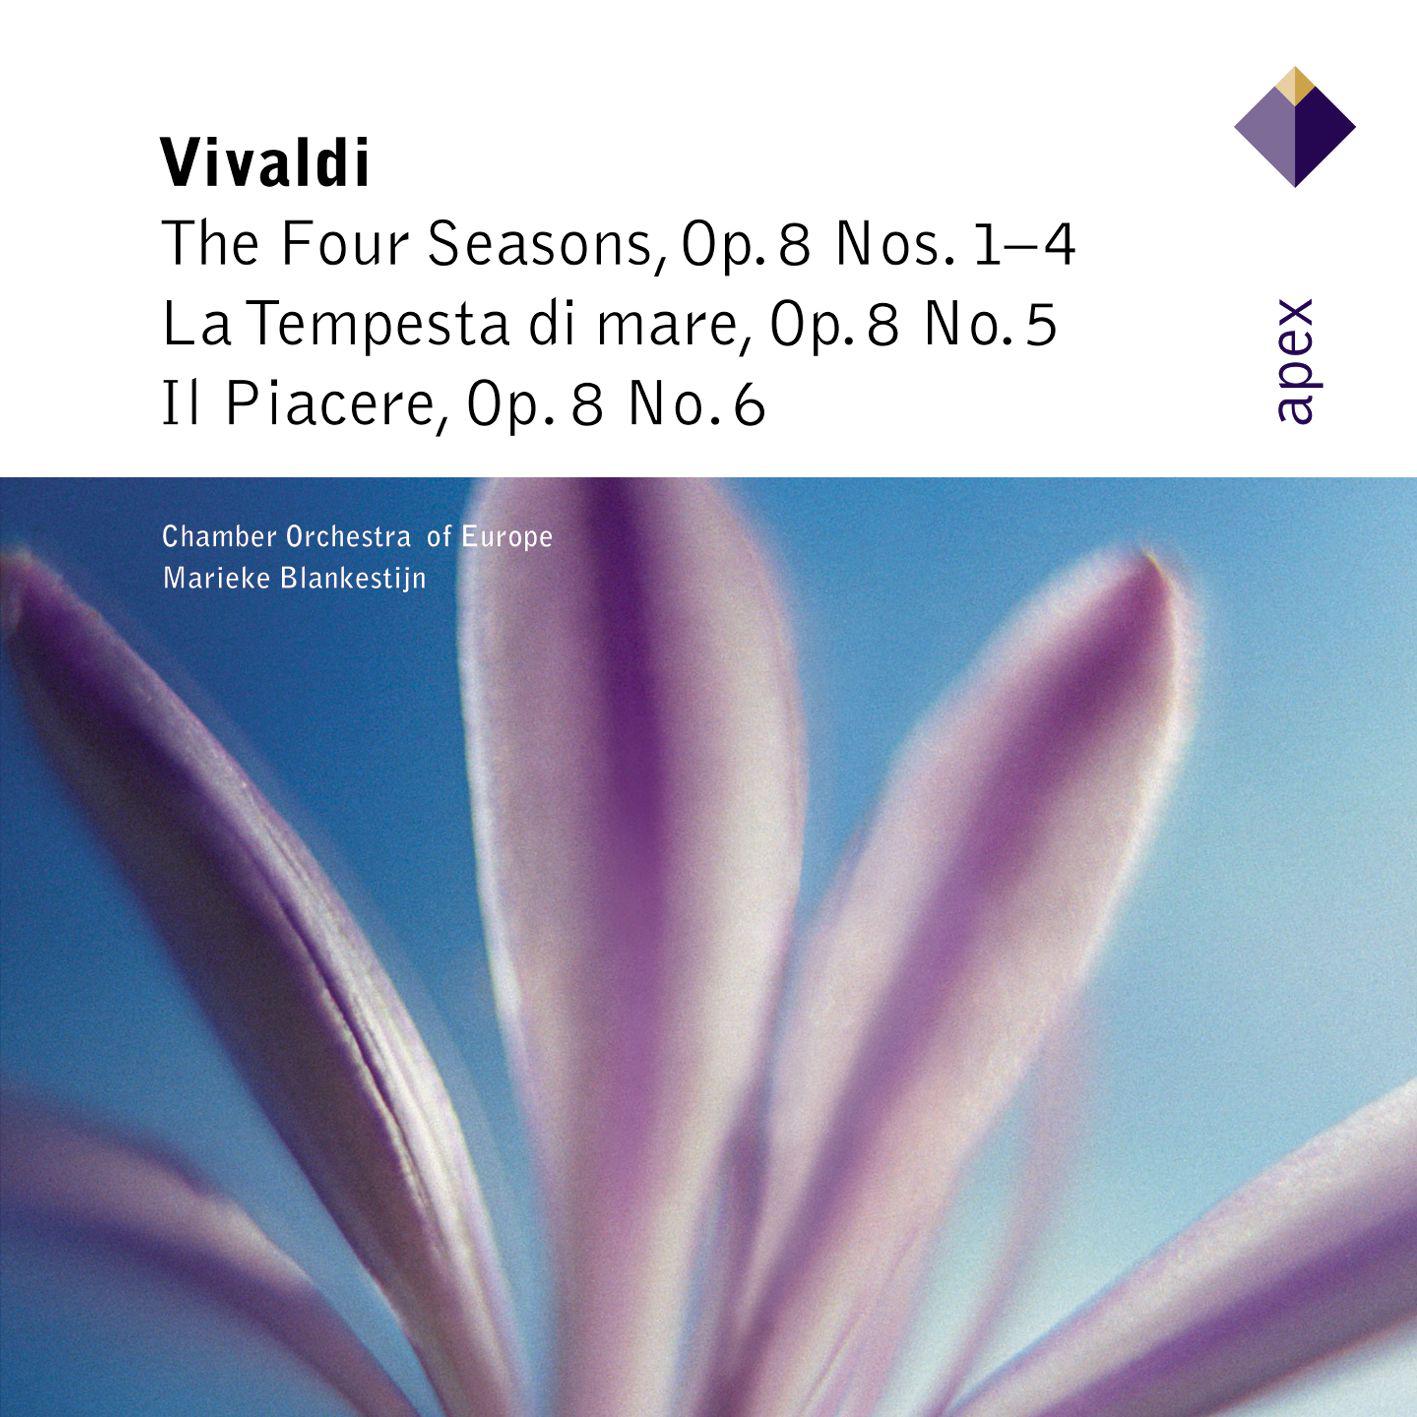 The Four Seasons, Violin Concerto in F Minor, Op. 8 No. 4, RV 297, "Winter": II. Largo